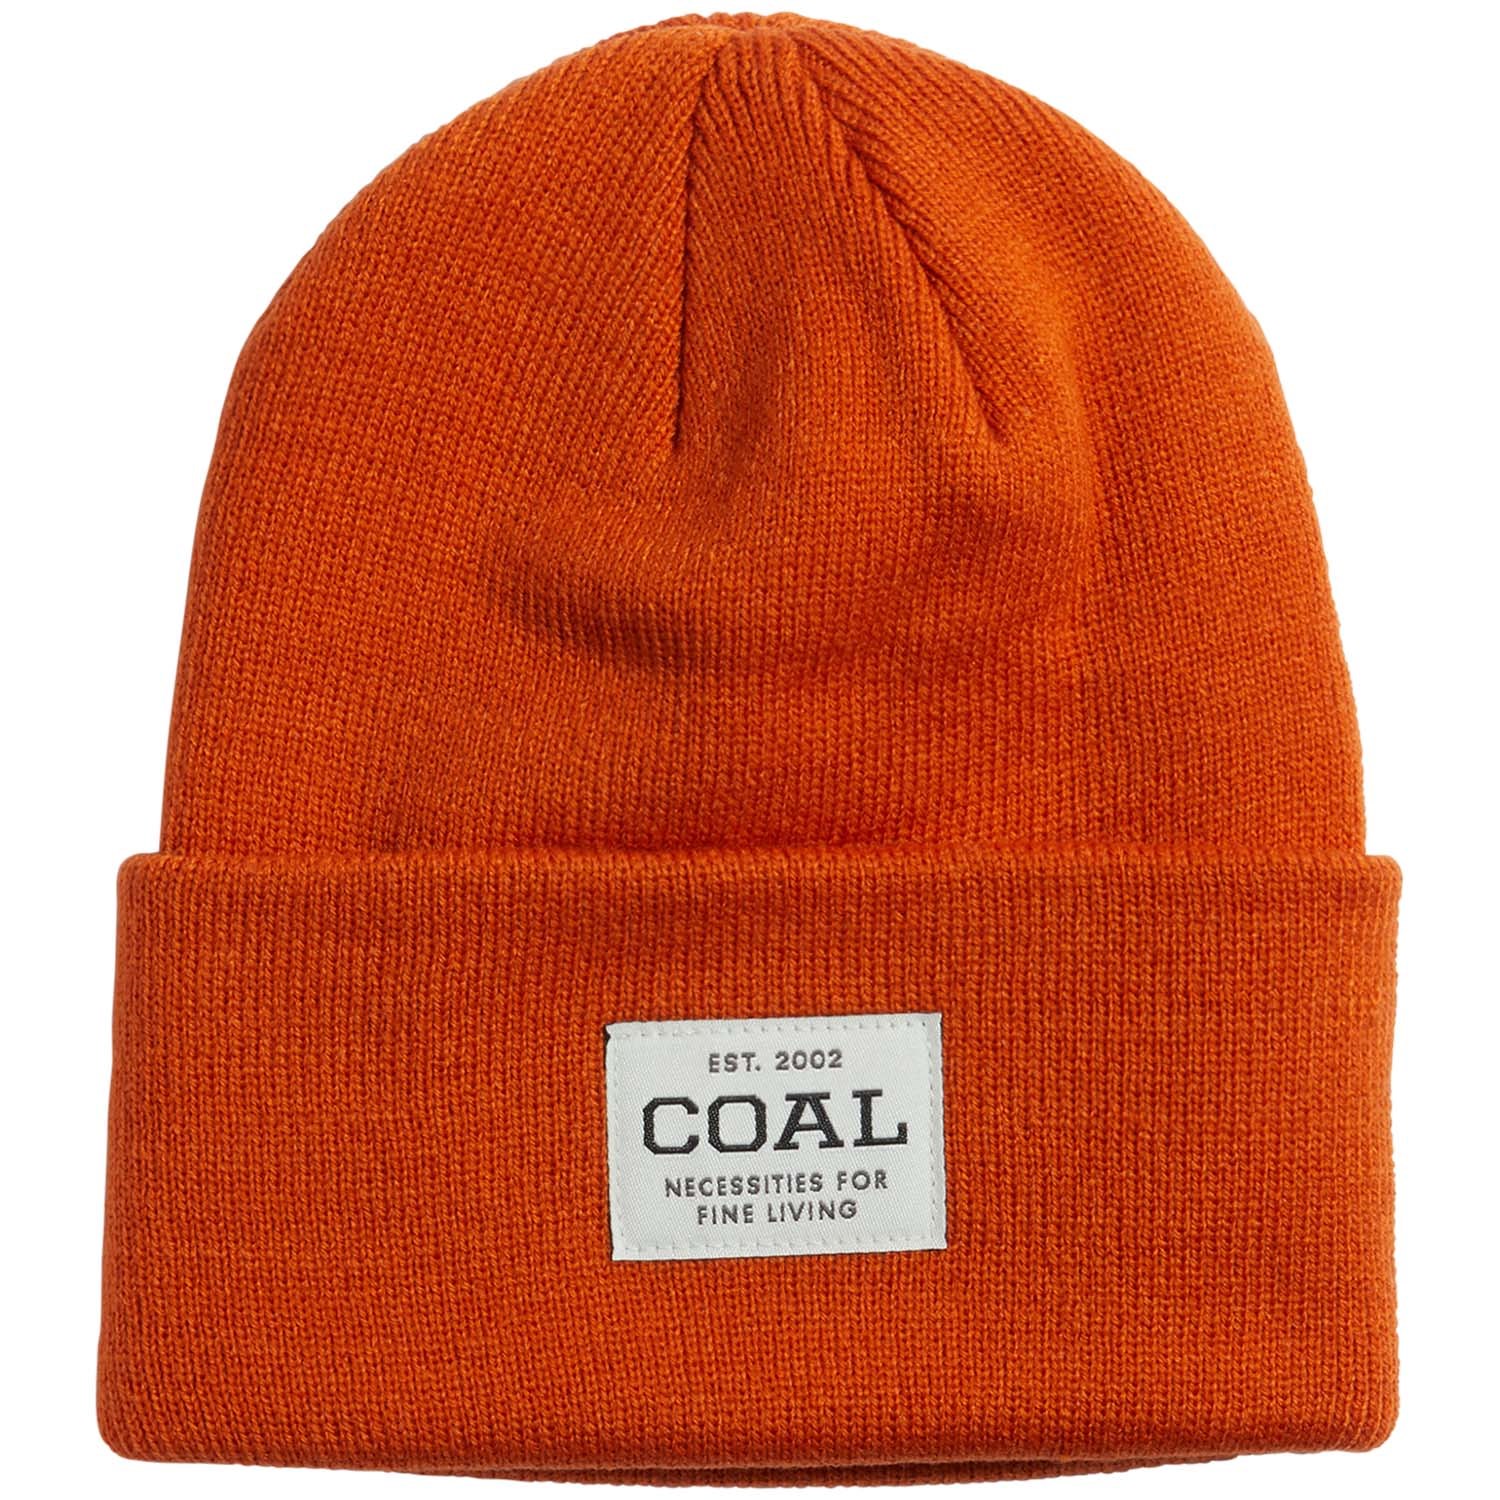 Лыжная шапка Coal, оранжевый